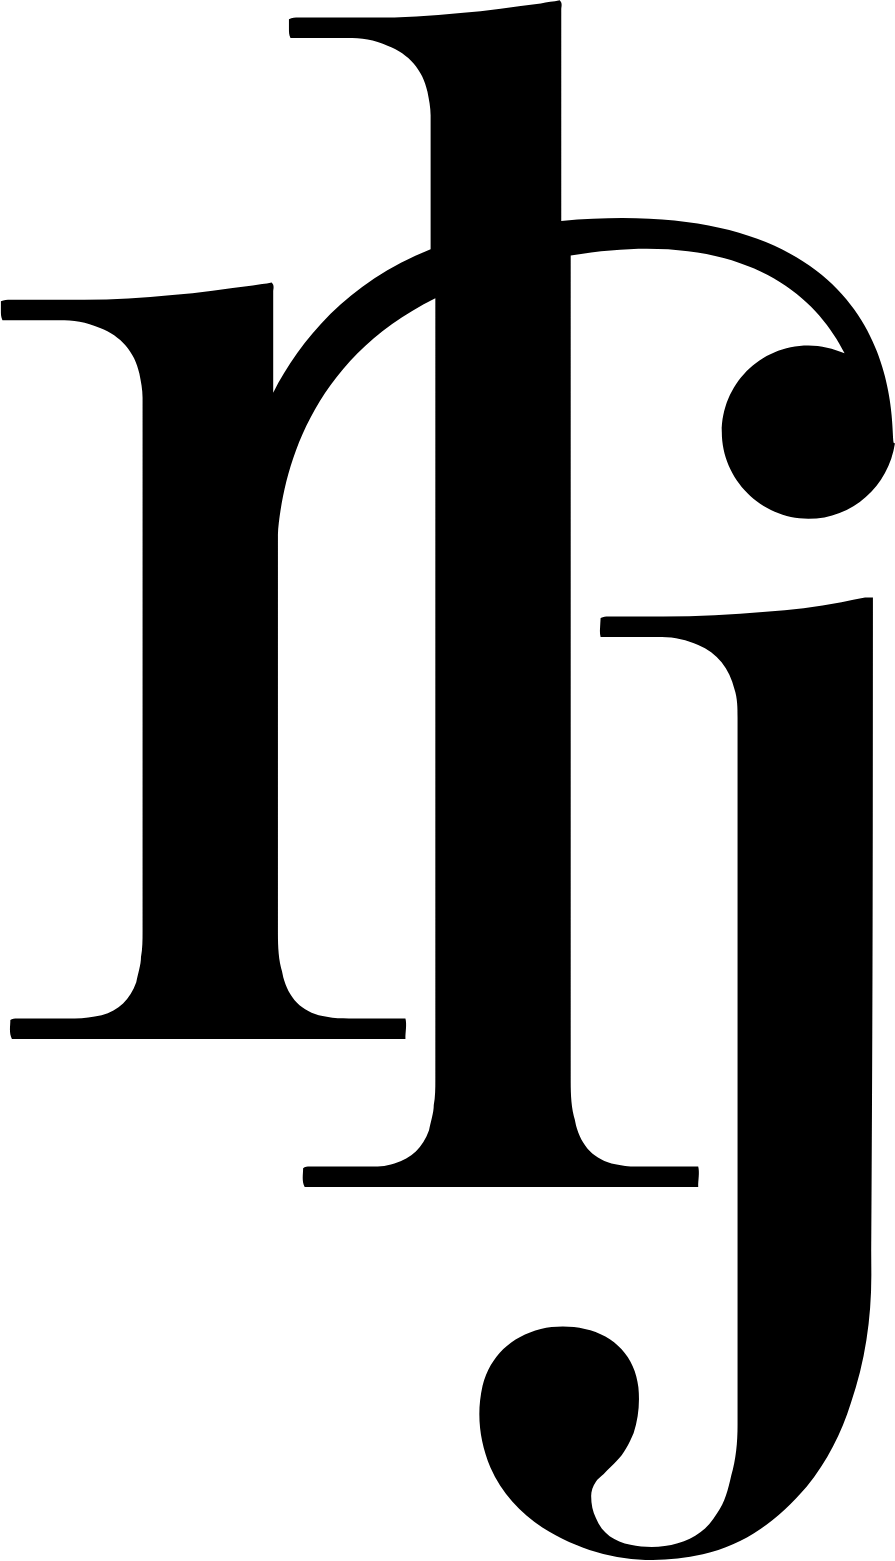 RLJ Lodging Trust logo (PNG transparent)